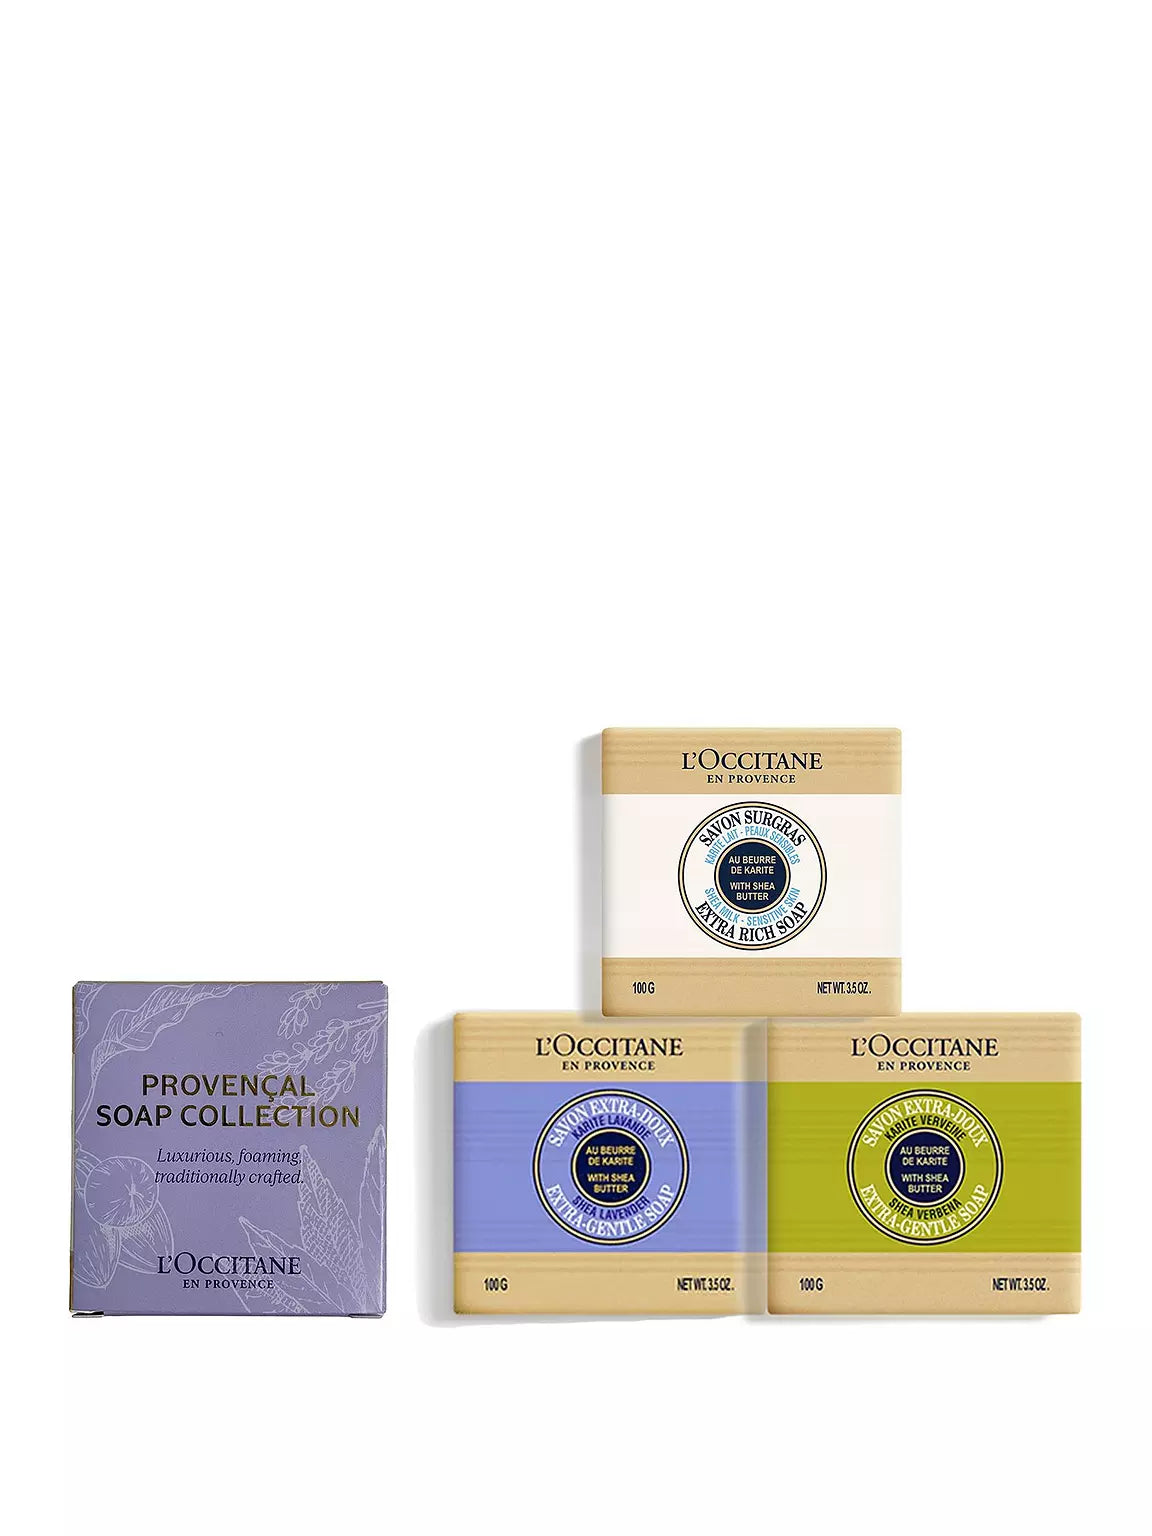 L'Occitane Provencal Soap Collection Image